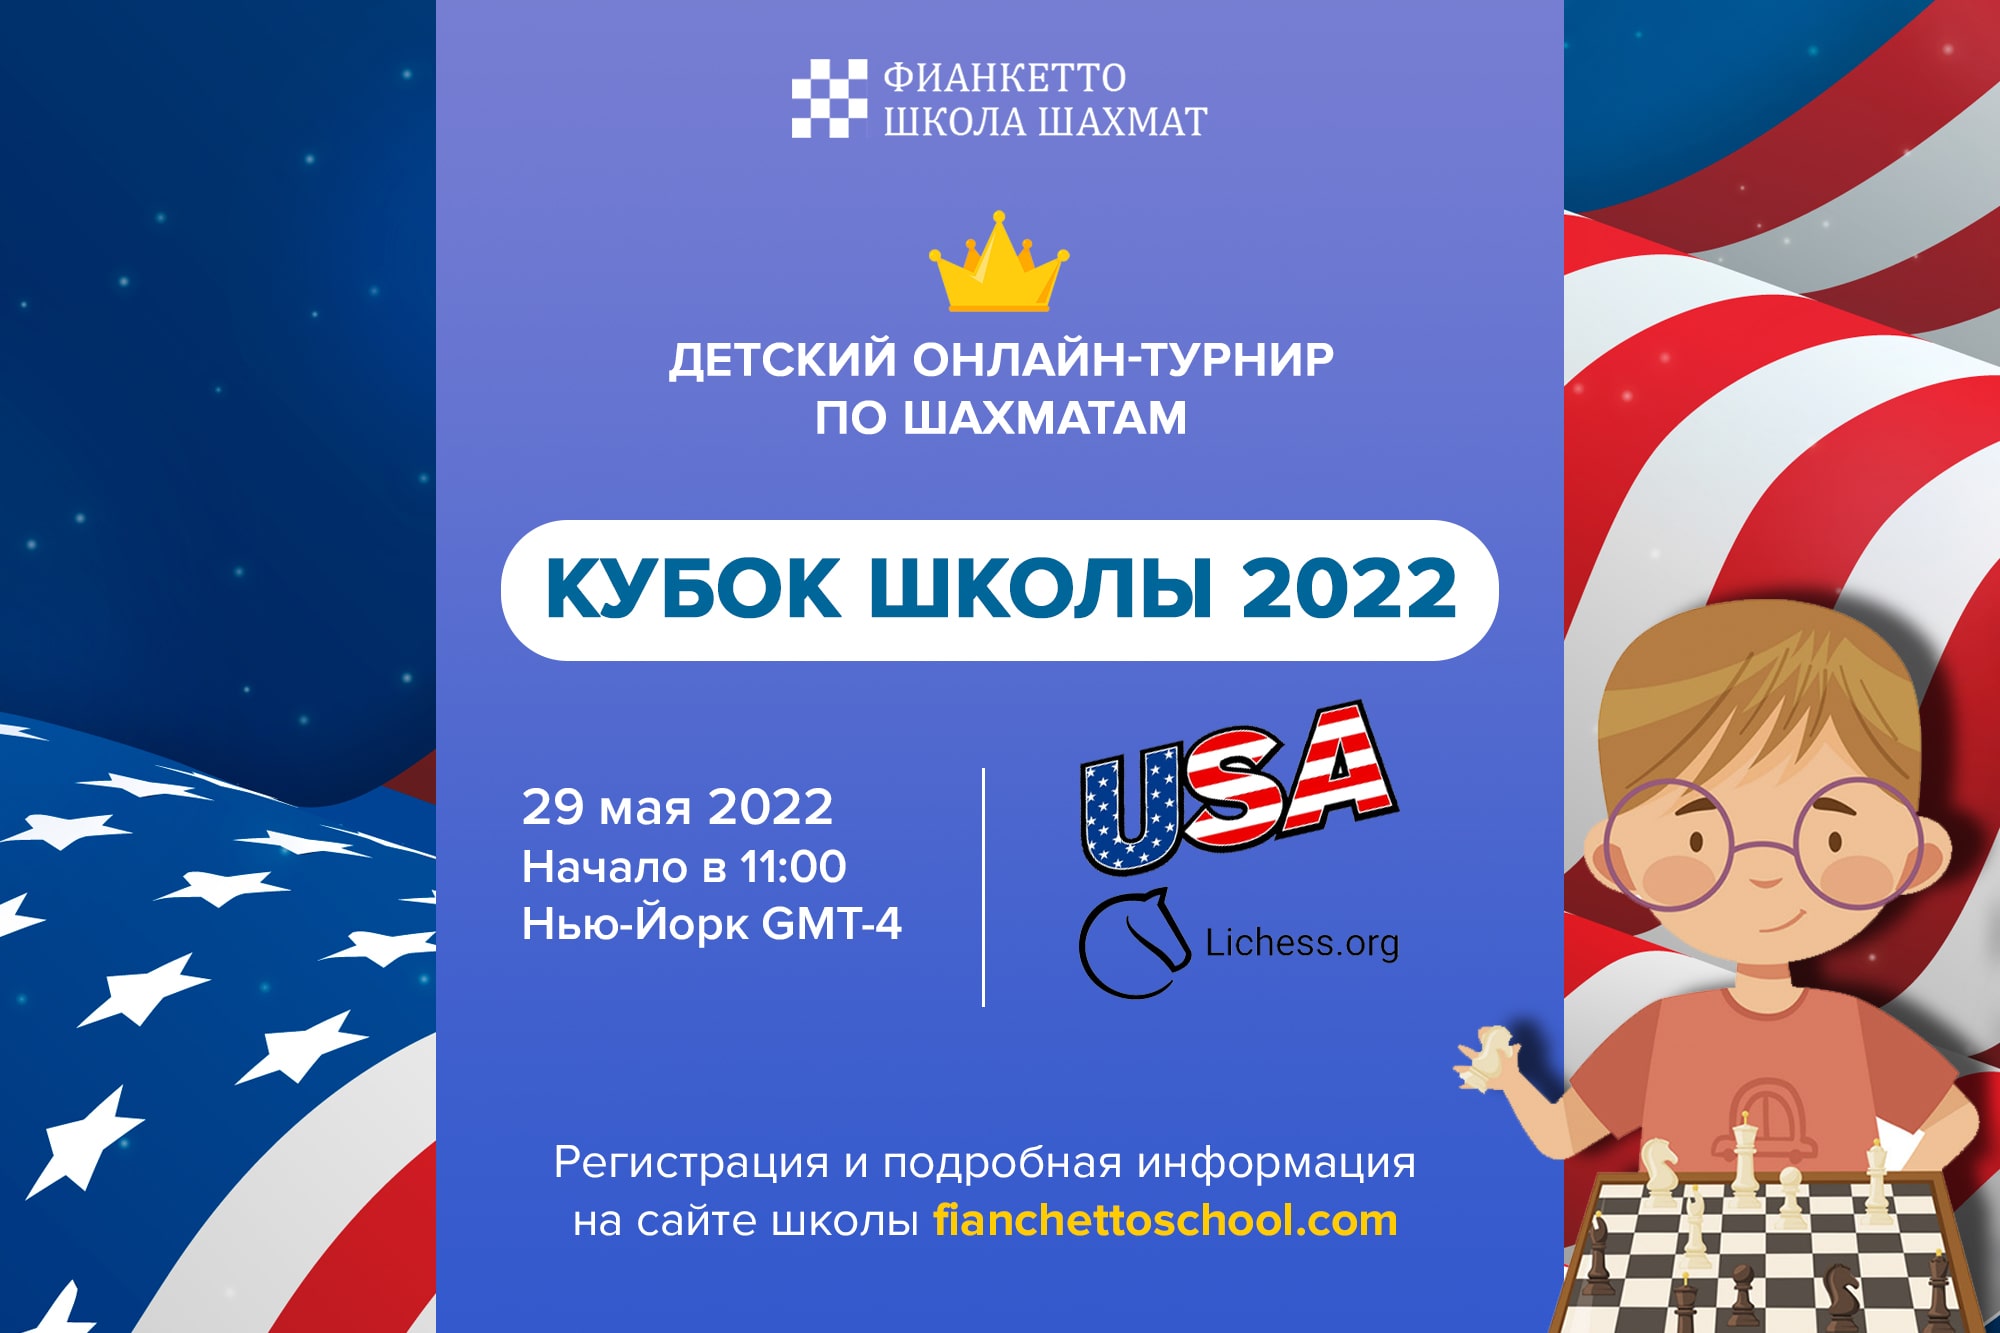 КУБОК ФИАНКЕТТО 2022 USA (АМЕРИКА)